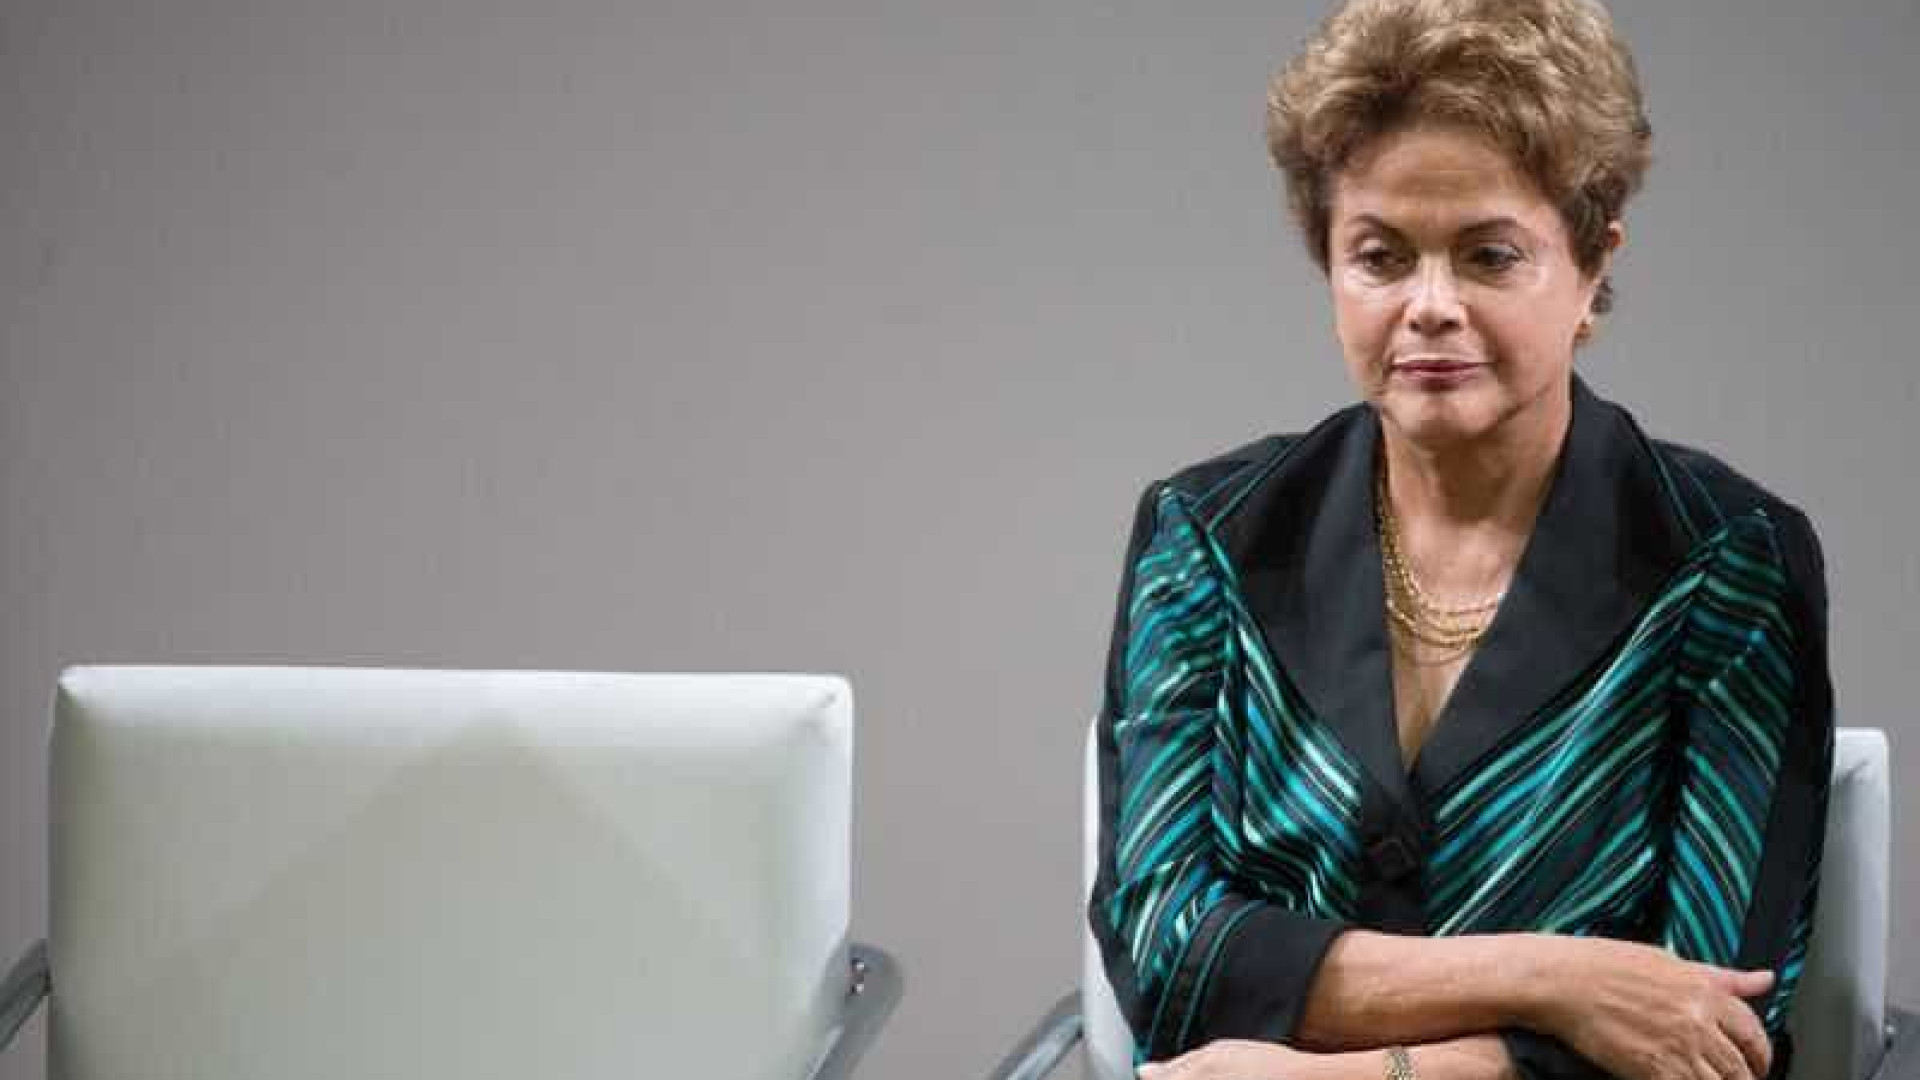 'Diálogo é encontrar unidade na diversidade', diz Dilma em rede social